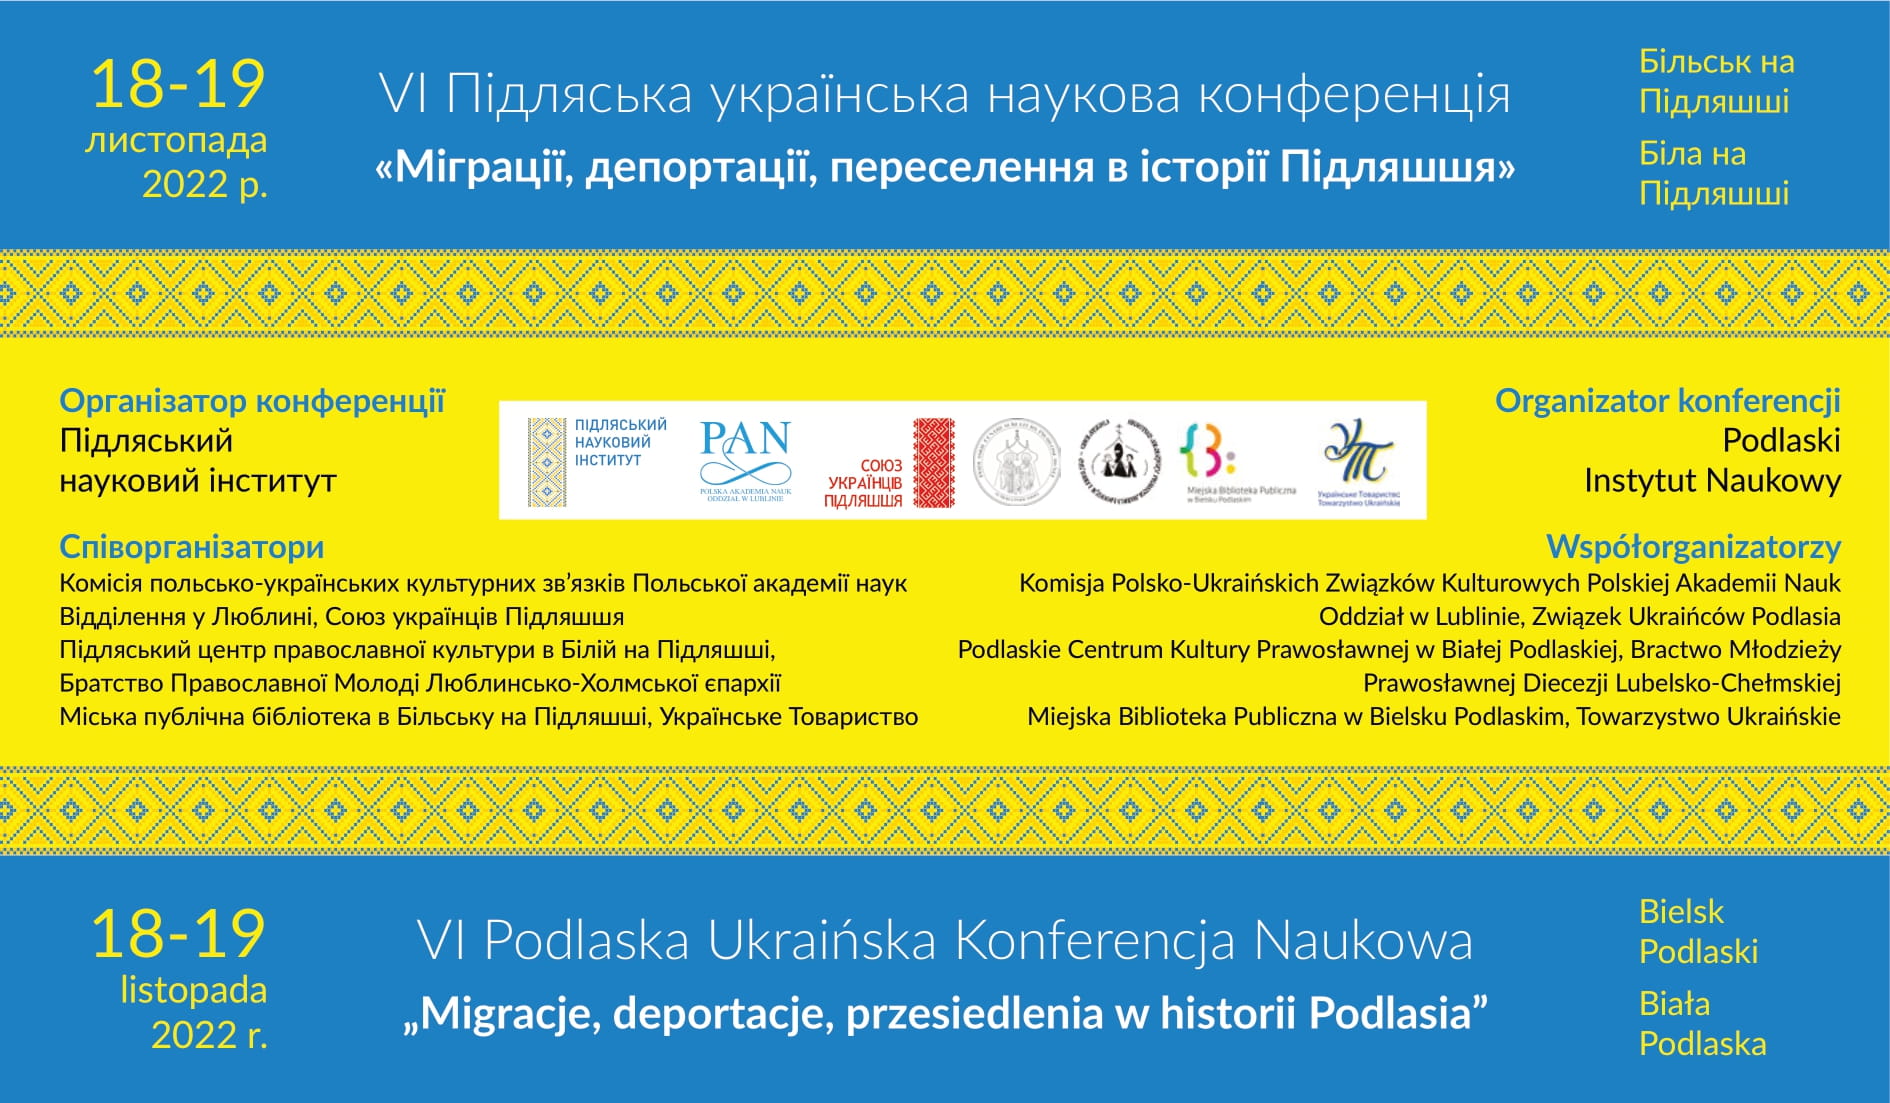 Współorganizatorzy, patronaty i finansowanie VI Podlaskiej Ukraińskiej Konferencji Naukowej